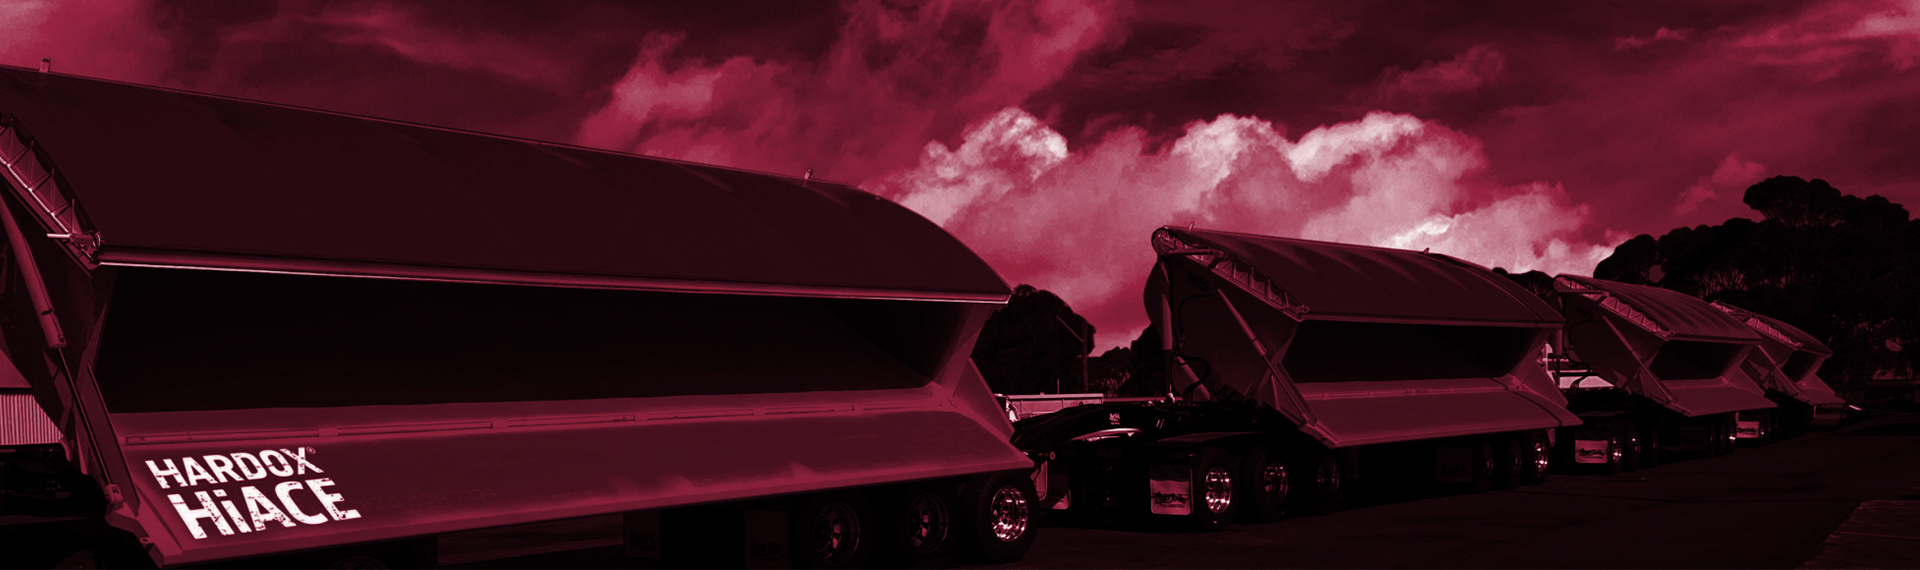 Hardox HiAce 내부식성 강재 제품 페이지. 덤프 트럭이 불타오르는 붉은 하늘을 배경으로 산성 부식성 폐기물을 덤핑하고 있습니다.